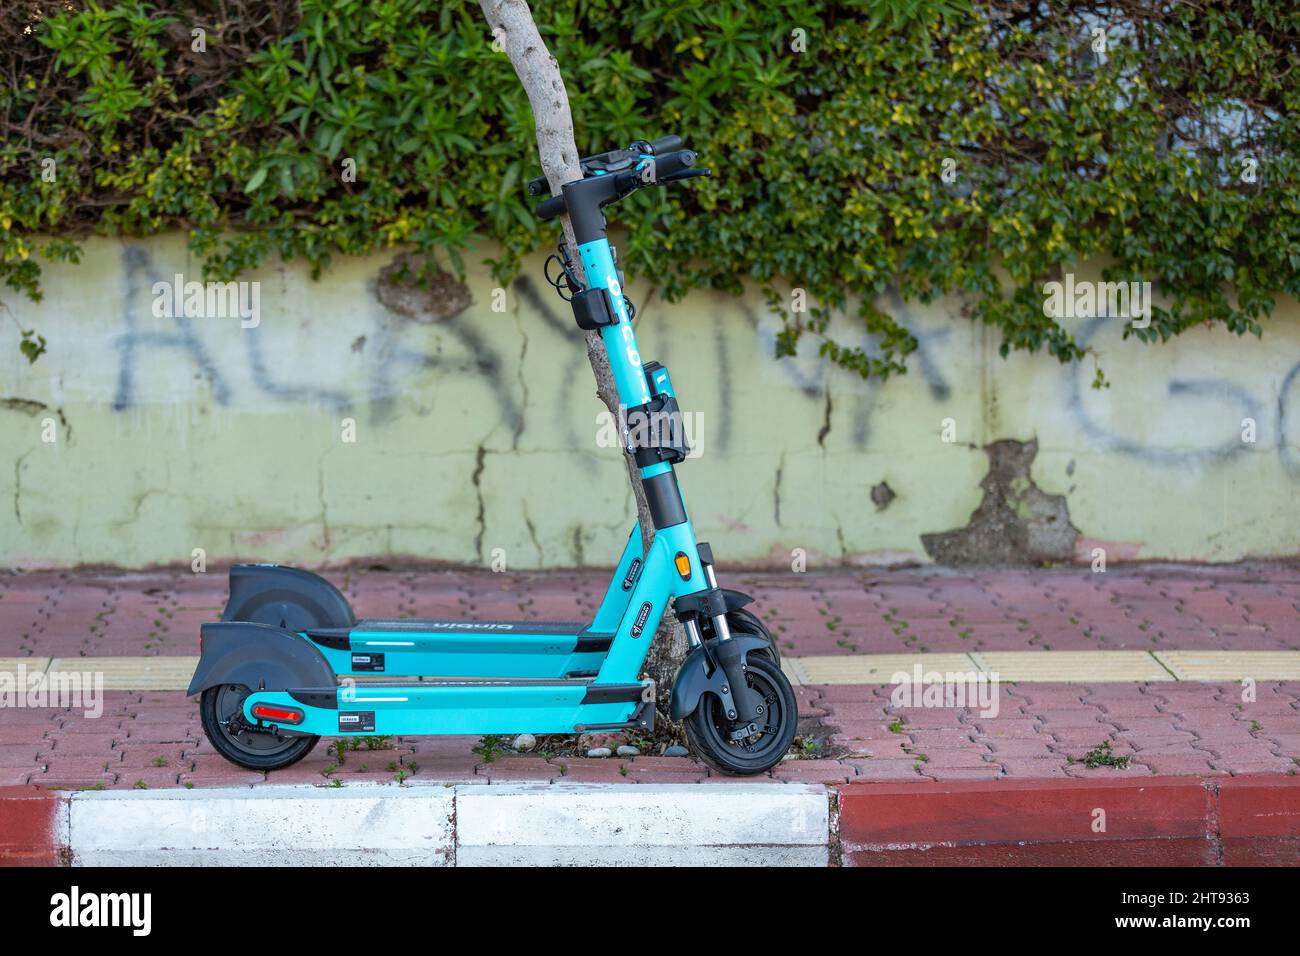 Türkei - Elektro-Scooter für den städtischen Transport in Antalya verwendet  Stockfotografie - Alamy